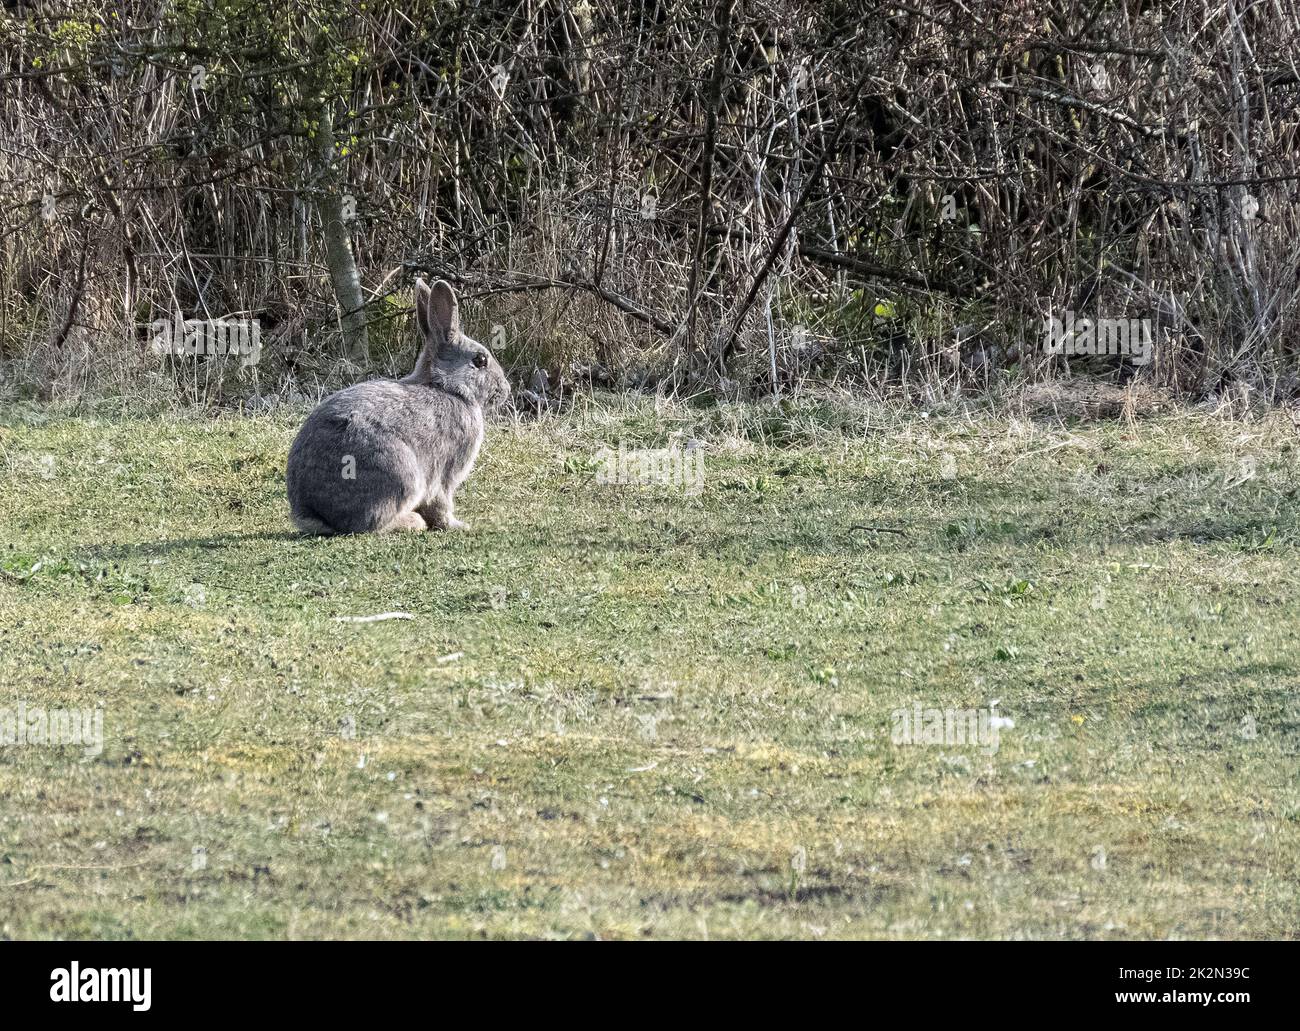 wild rabbit, gotland, sweden Stock Photo